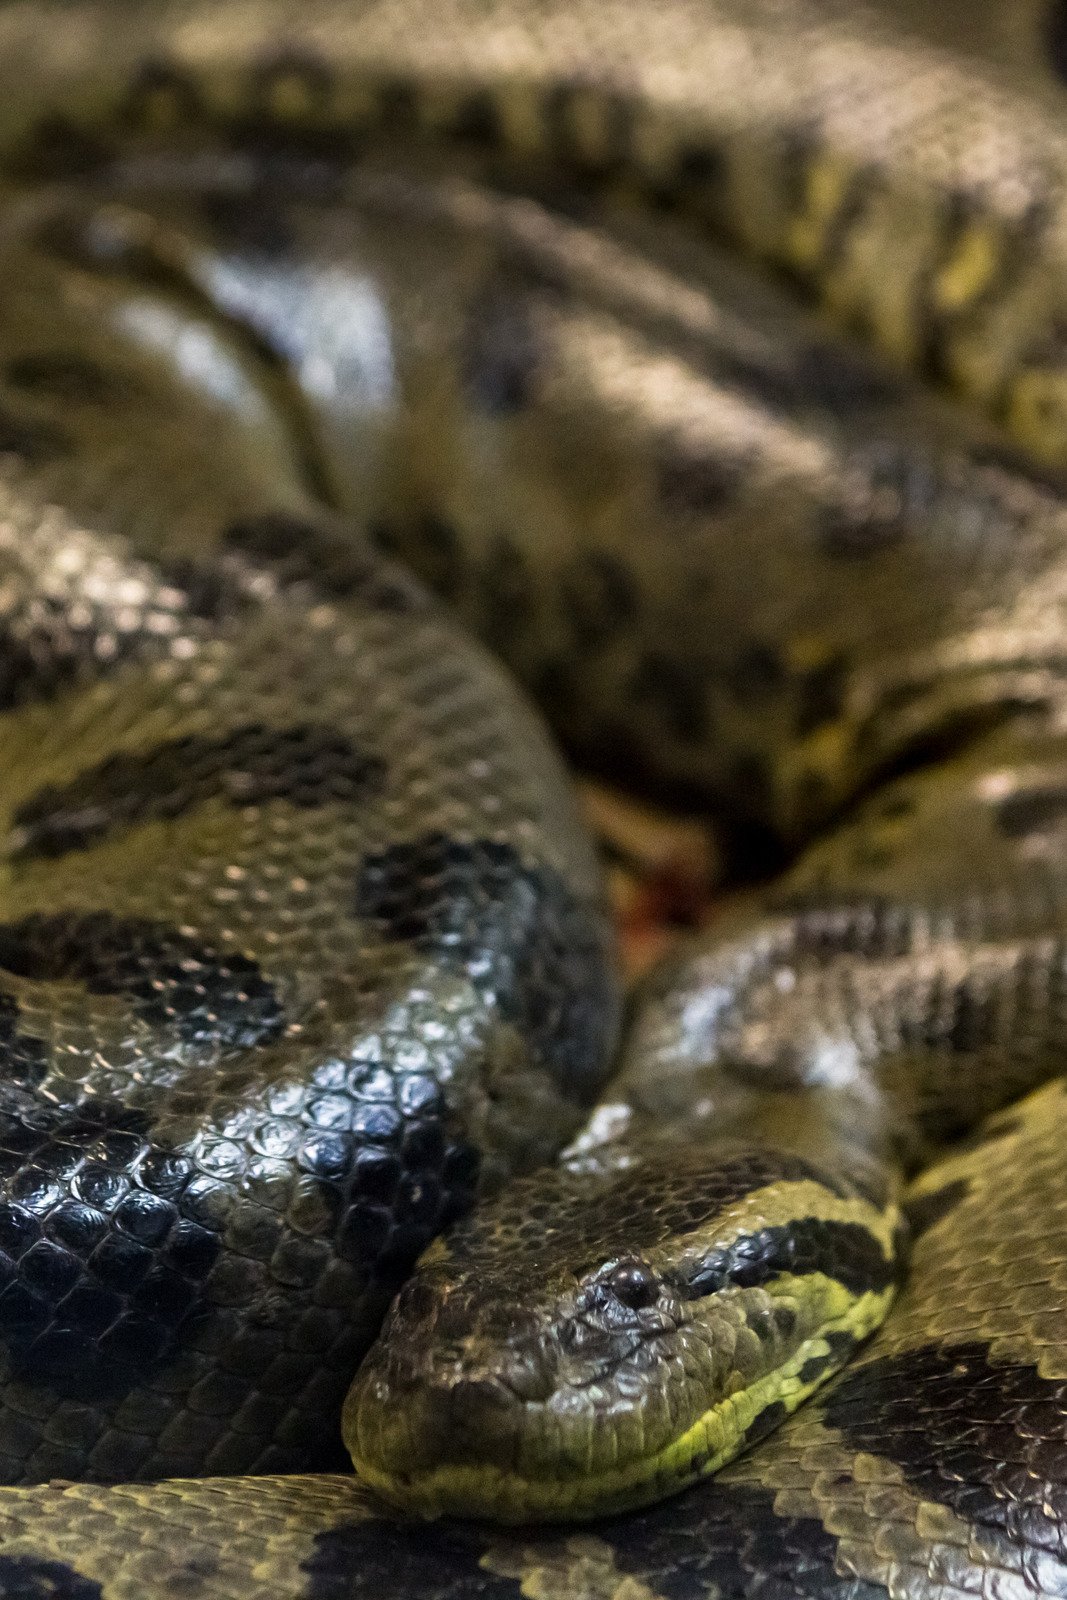 Green anaconda, Eunectes murinus, sucuri snake. Huge - Fotos do Canva